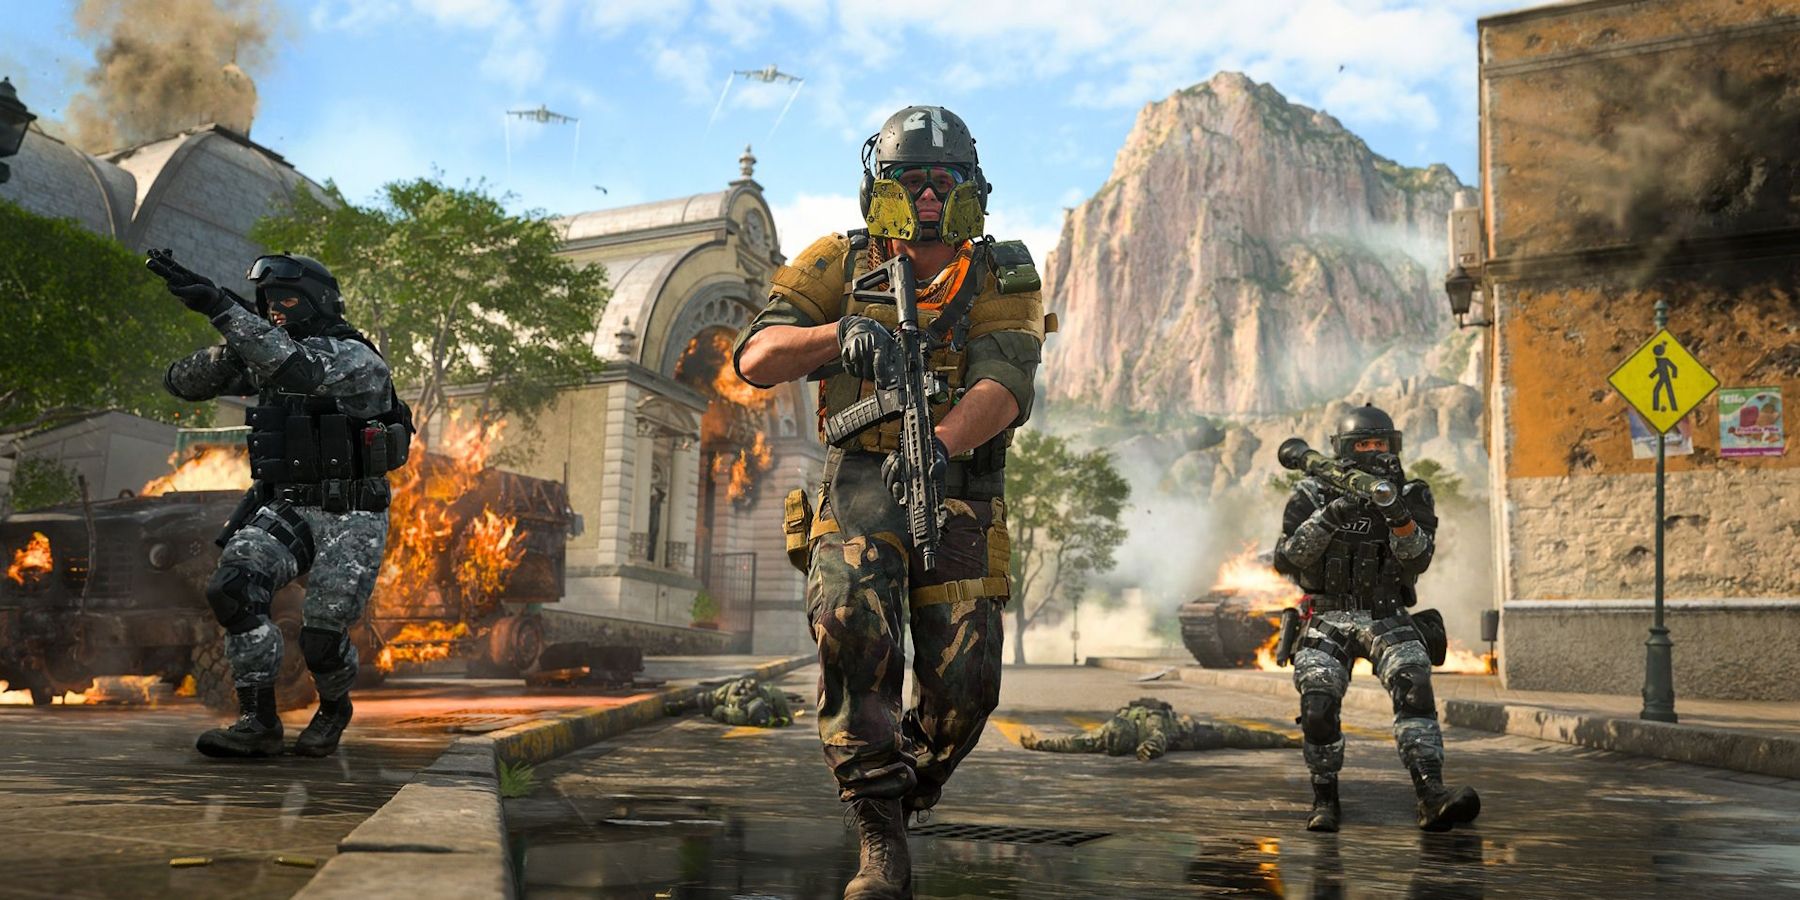 Imagen promocional del modo multijugador de Call of Duty Modern Warfare 2